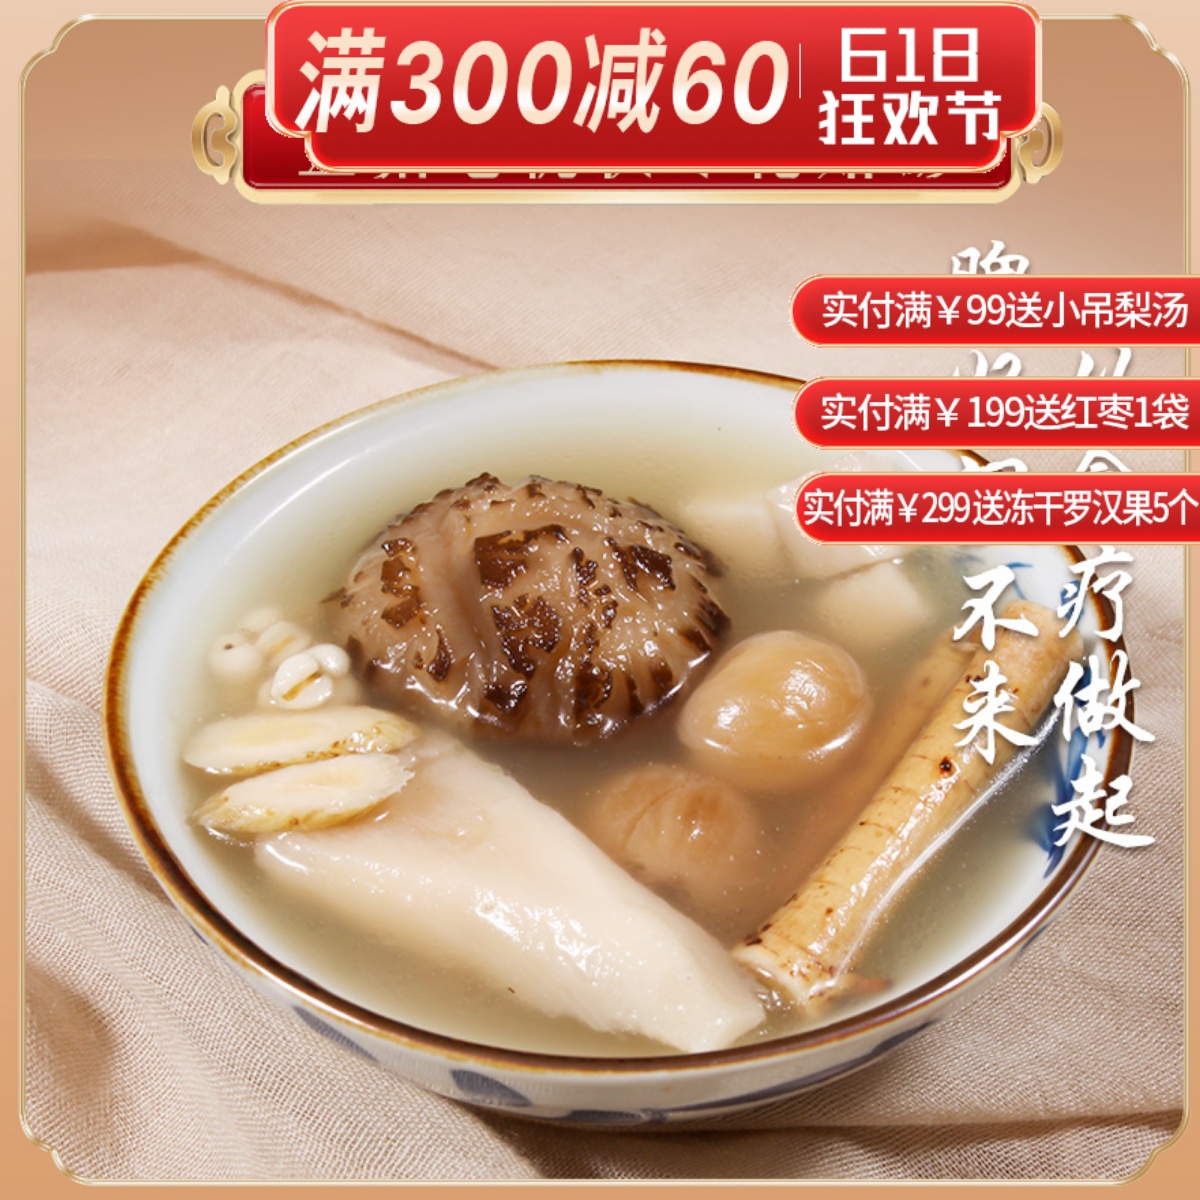 广东滋补品炖鸡汤煲汤材料包干货养生汤包五指毛桃花菇祛湿汤料包